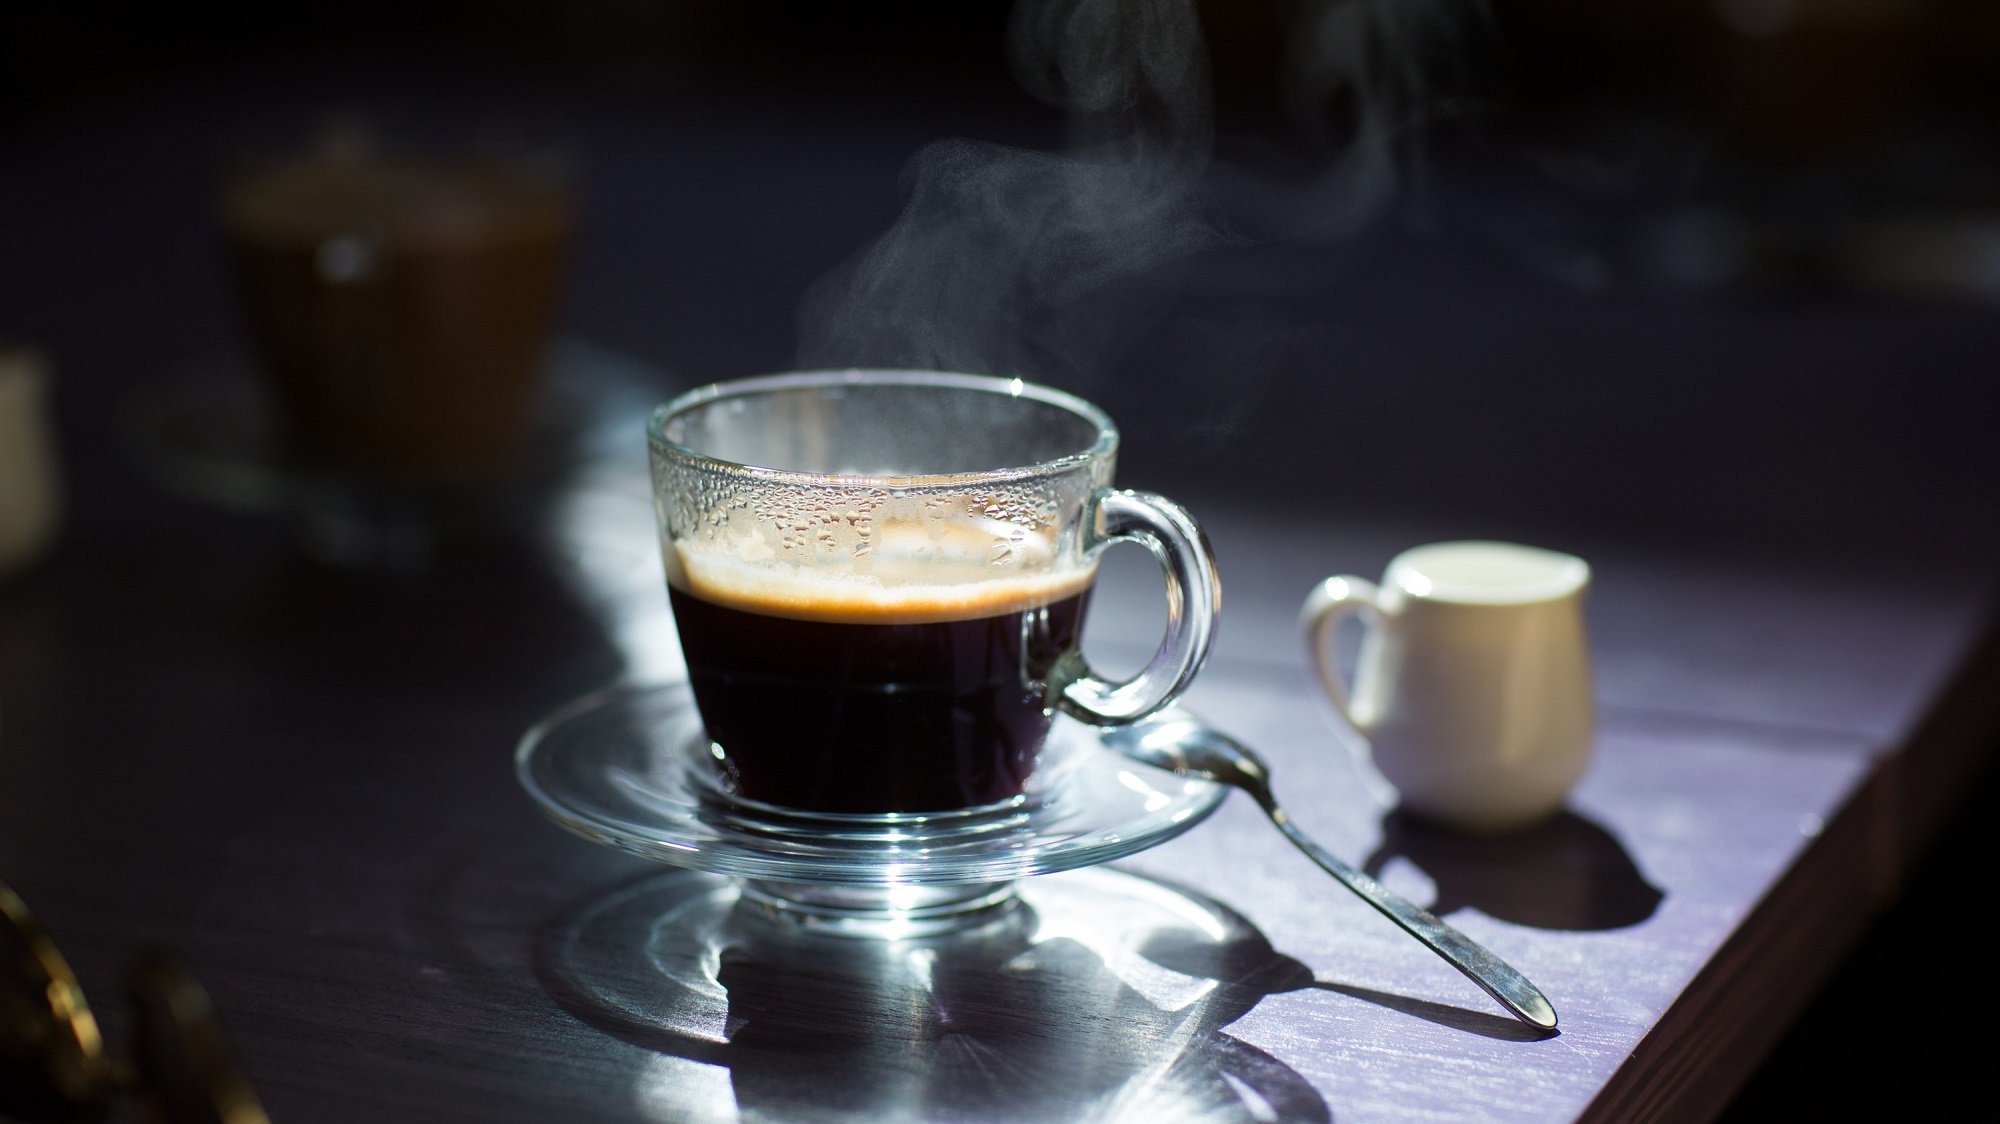 Frontalsicht: Auf auf einem dunklen Tisch stehen vor einem dunklen Hintergrund ein Glas schwarzer Kaffee sowie ein helles weißen Kännchen aus Porzellan.